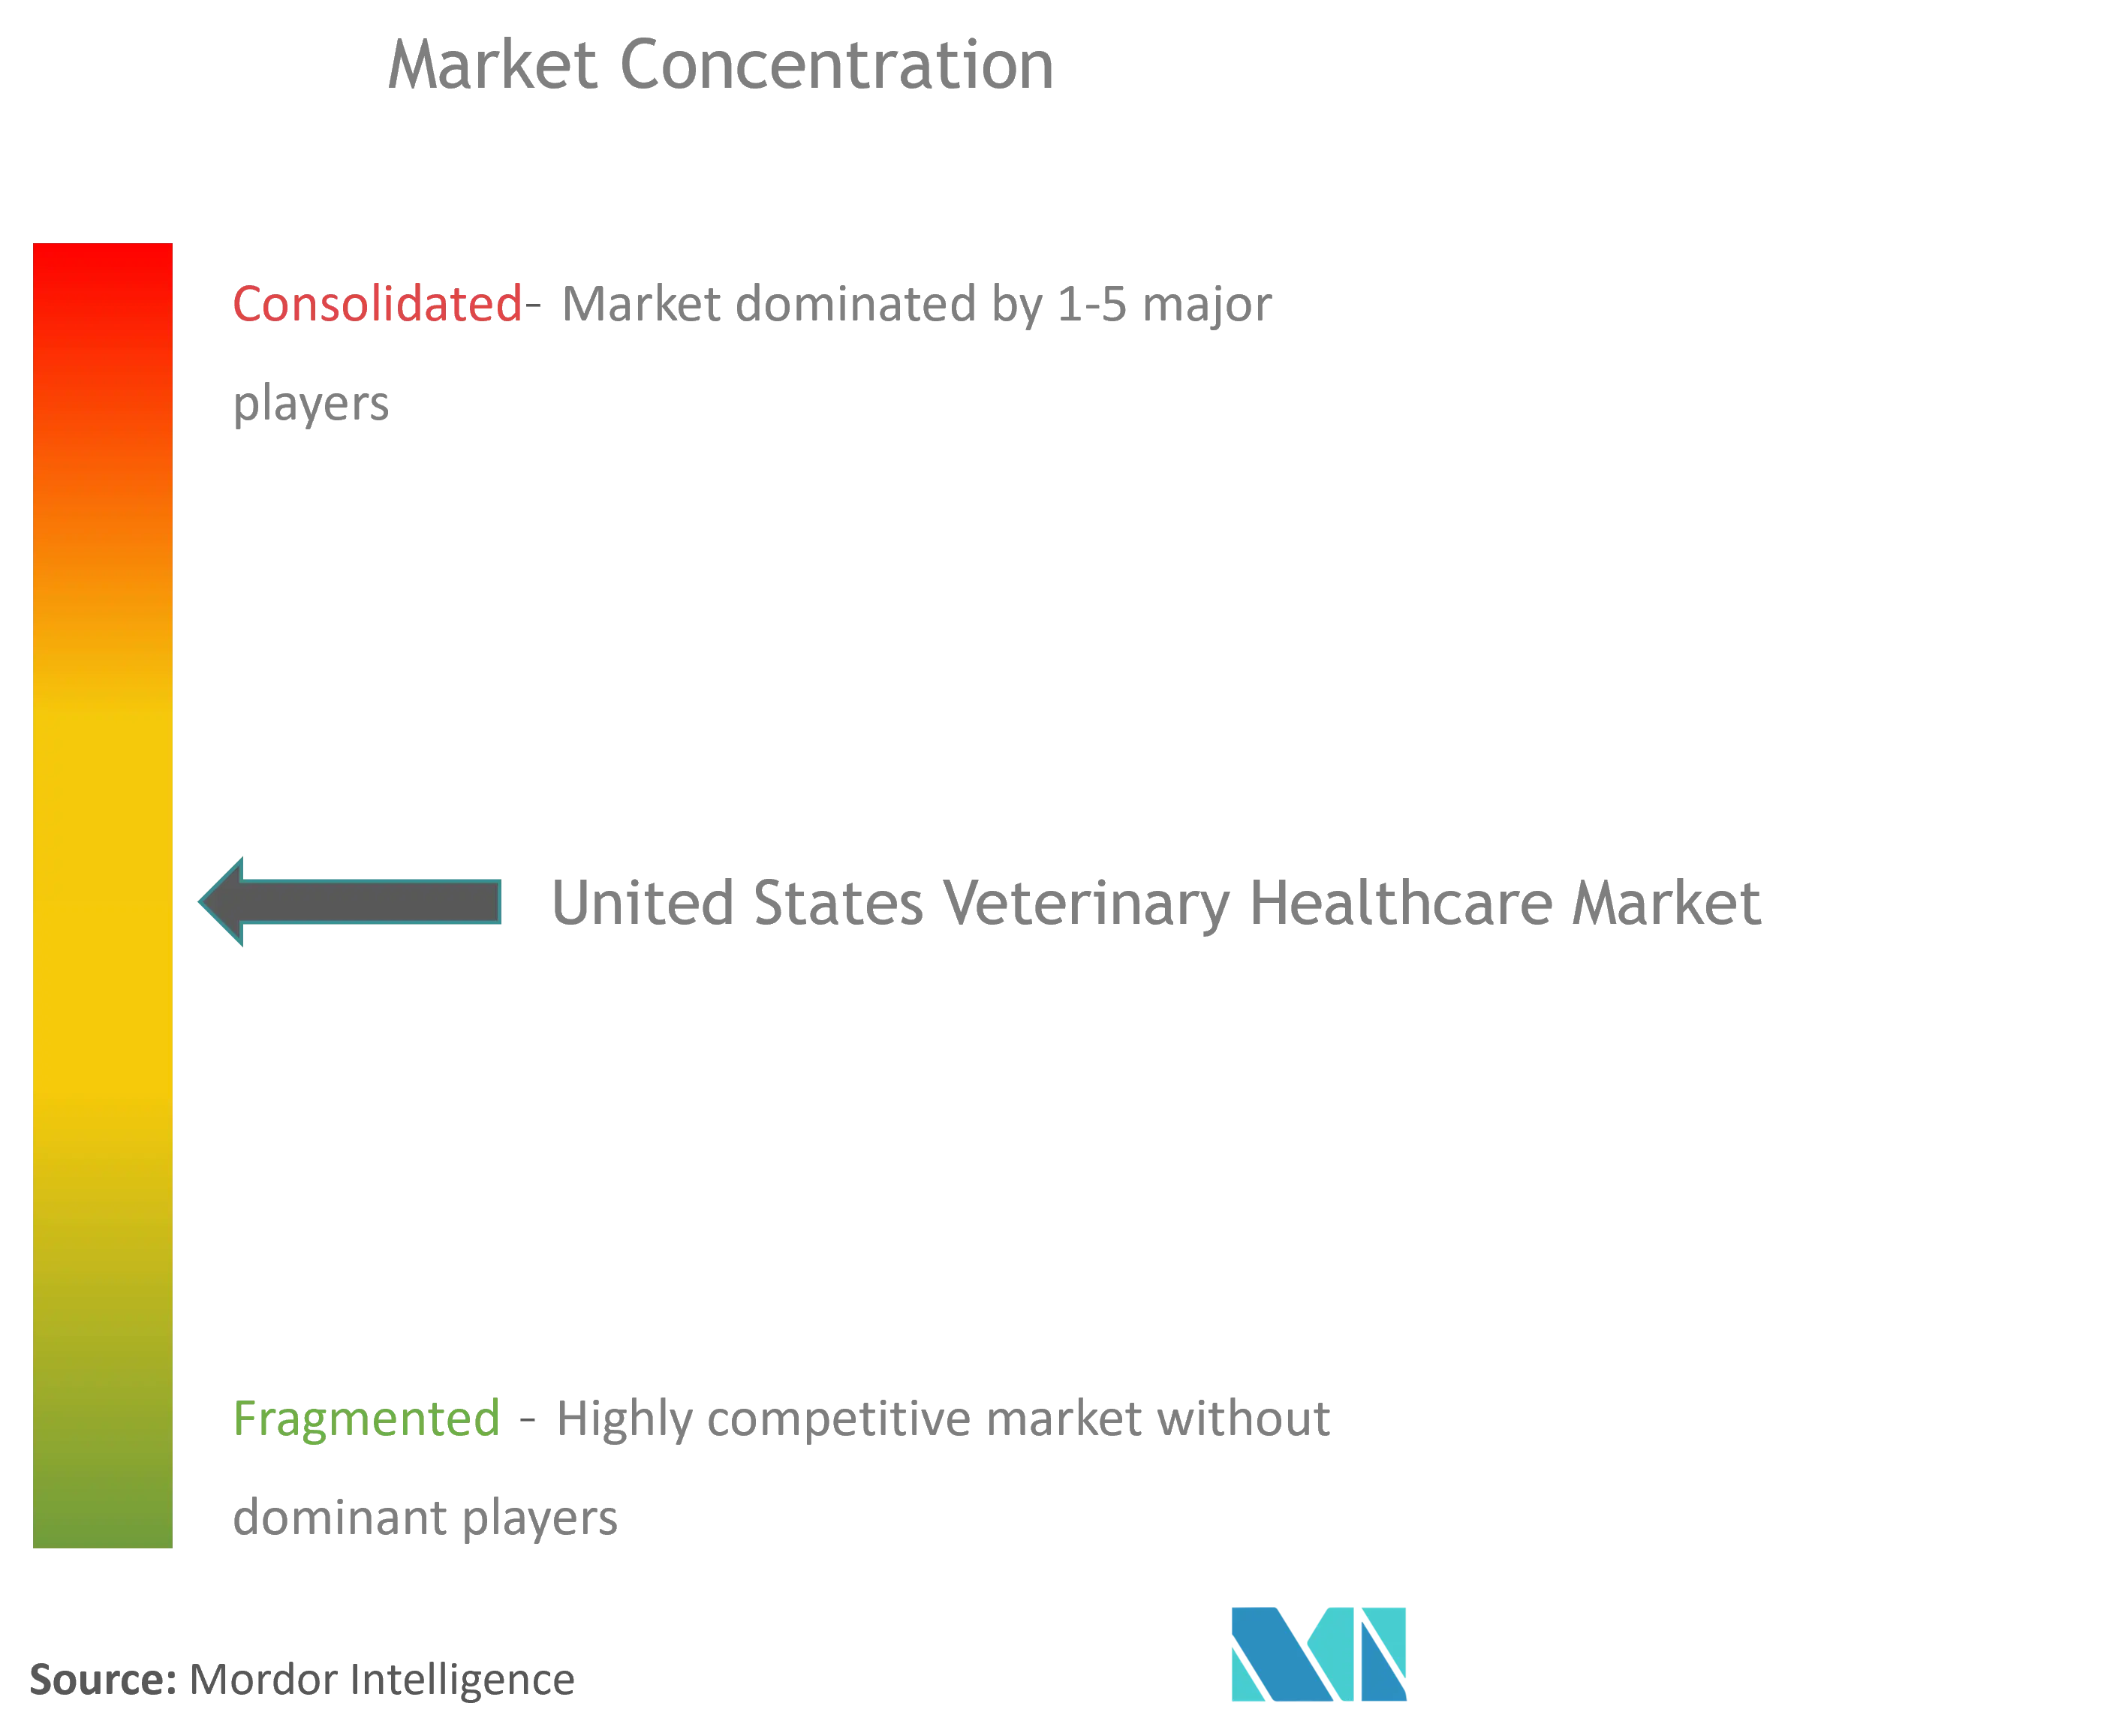 Marktkonzentration im veterinärmedizinischen Gesundheitswesen der Vereinigten Staaten